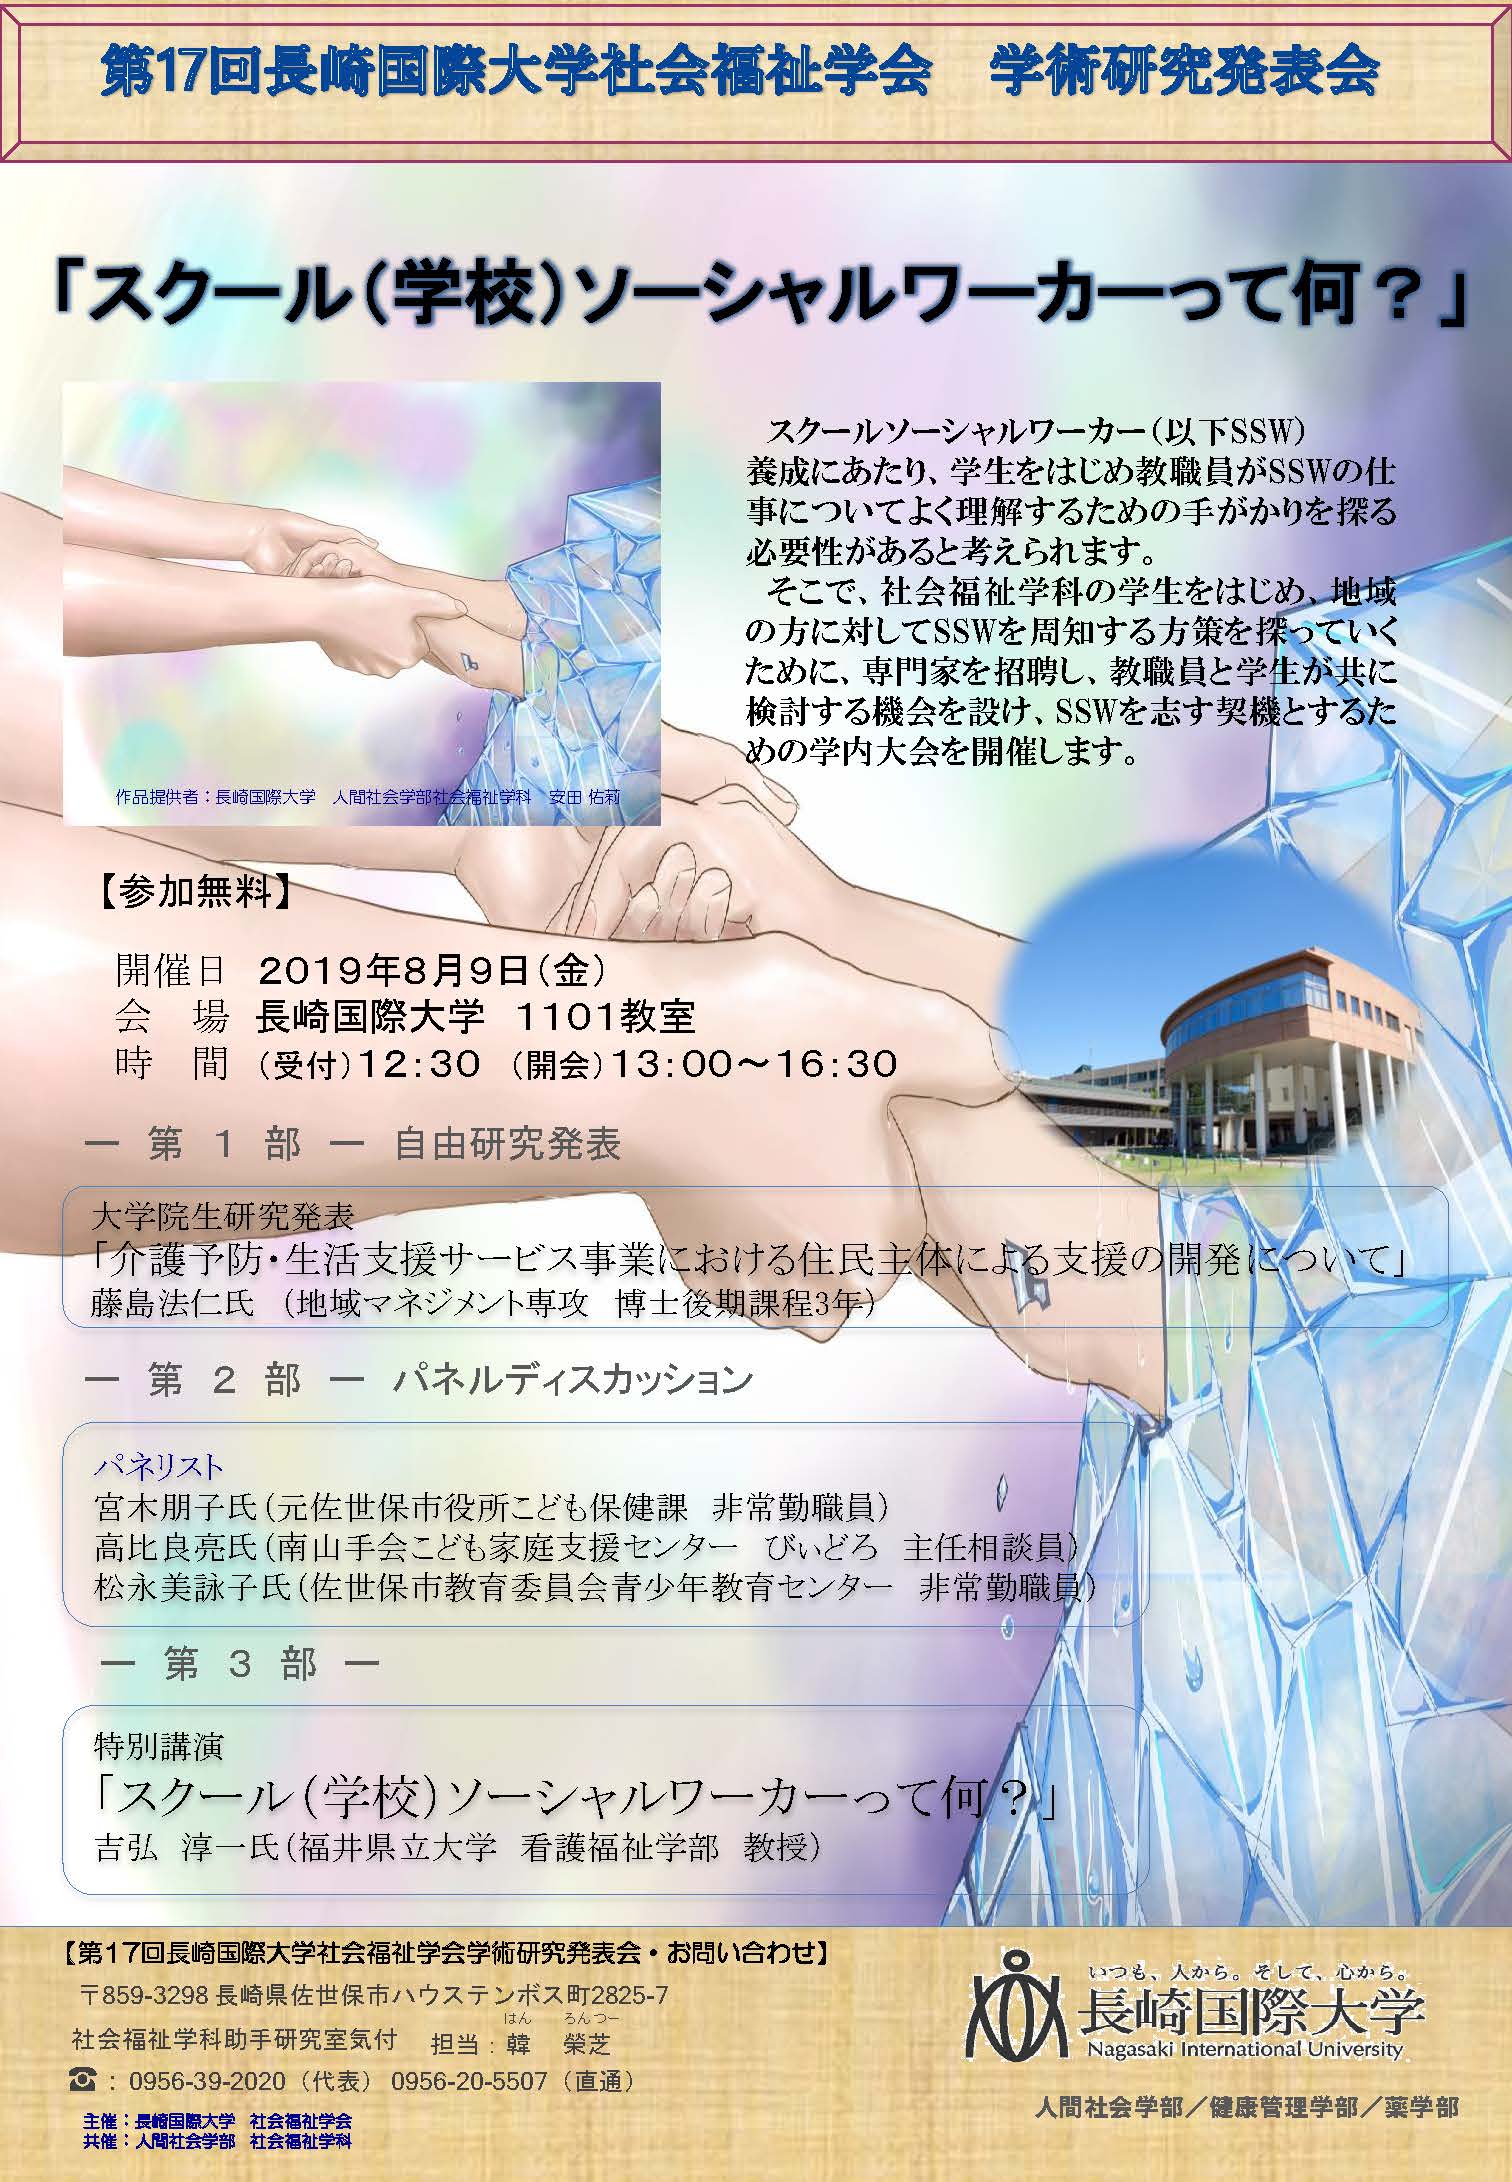 【社会福祉学科】第17回長崎国際大学社会福祉学会 学術研究発表会を開催します